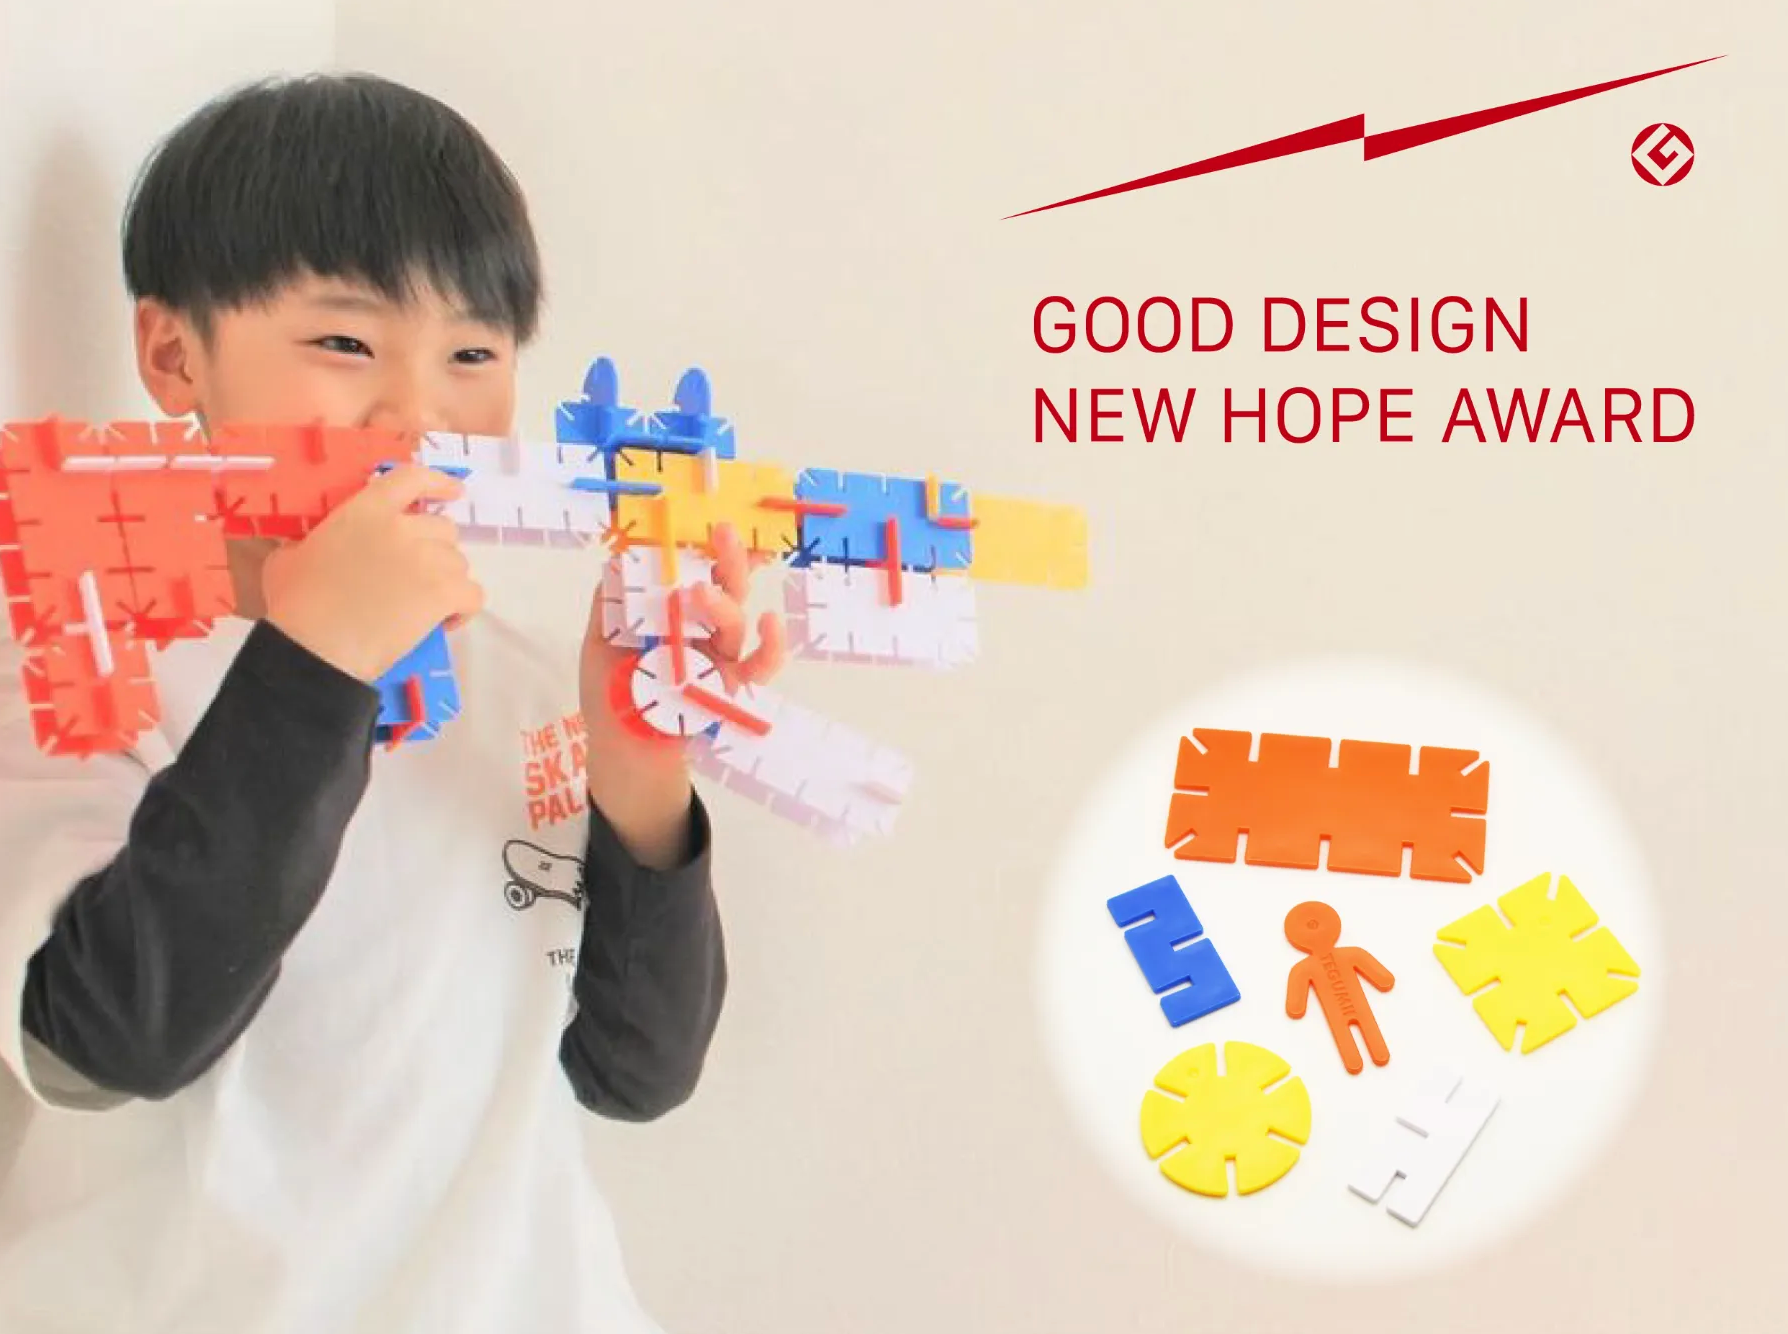 【プレスリリース】組み立ておもちゃテグミーが「グッドデザイン・ニューホープ賞」を受賞